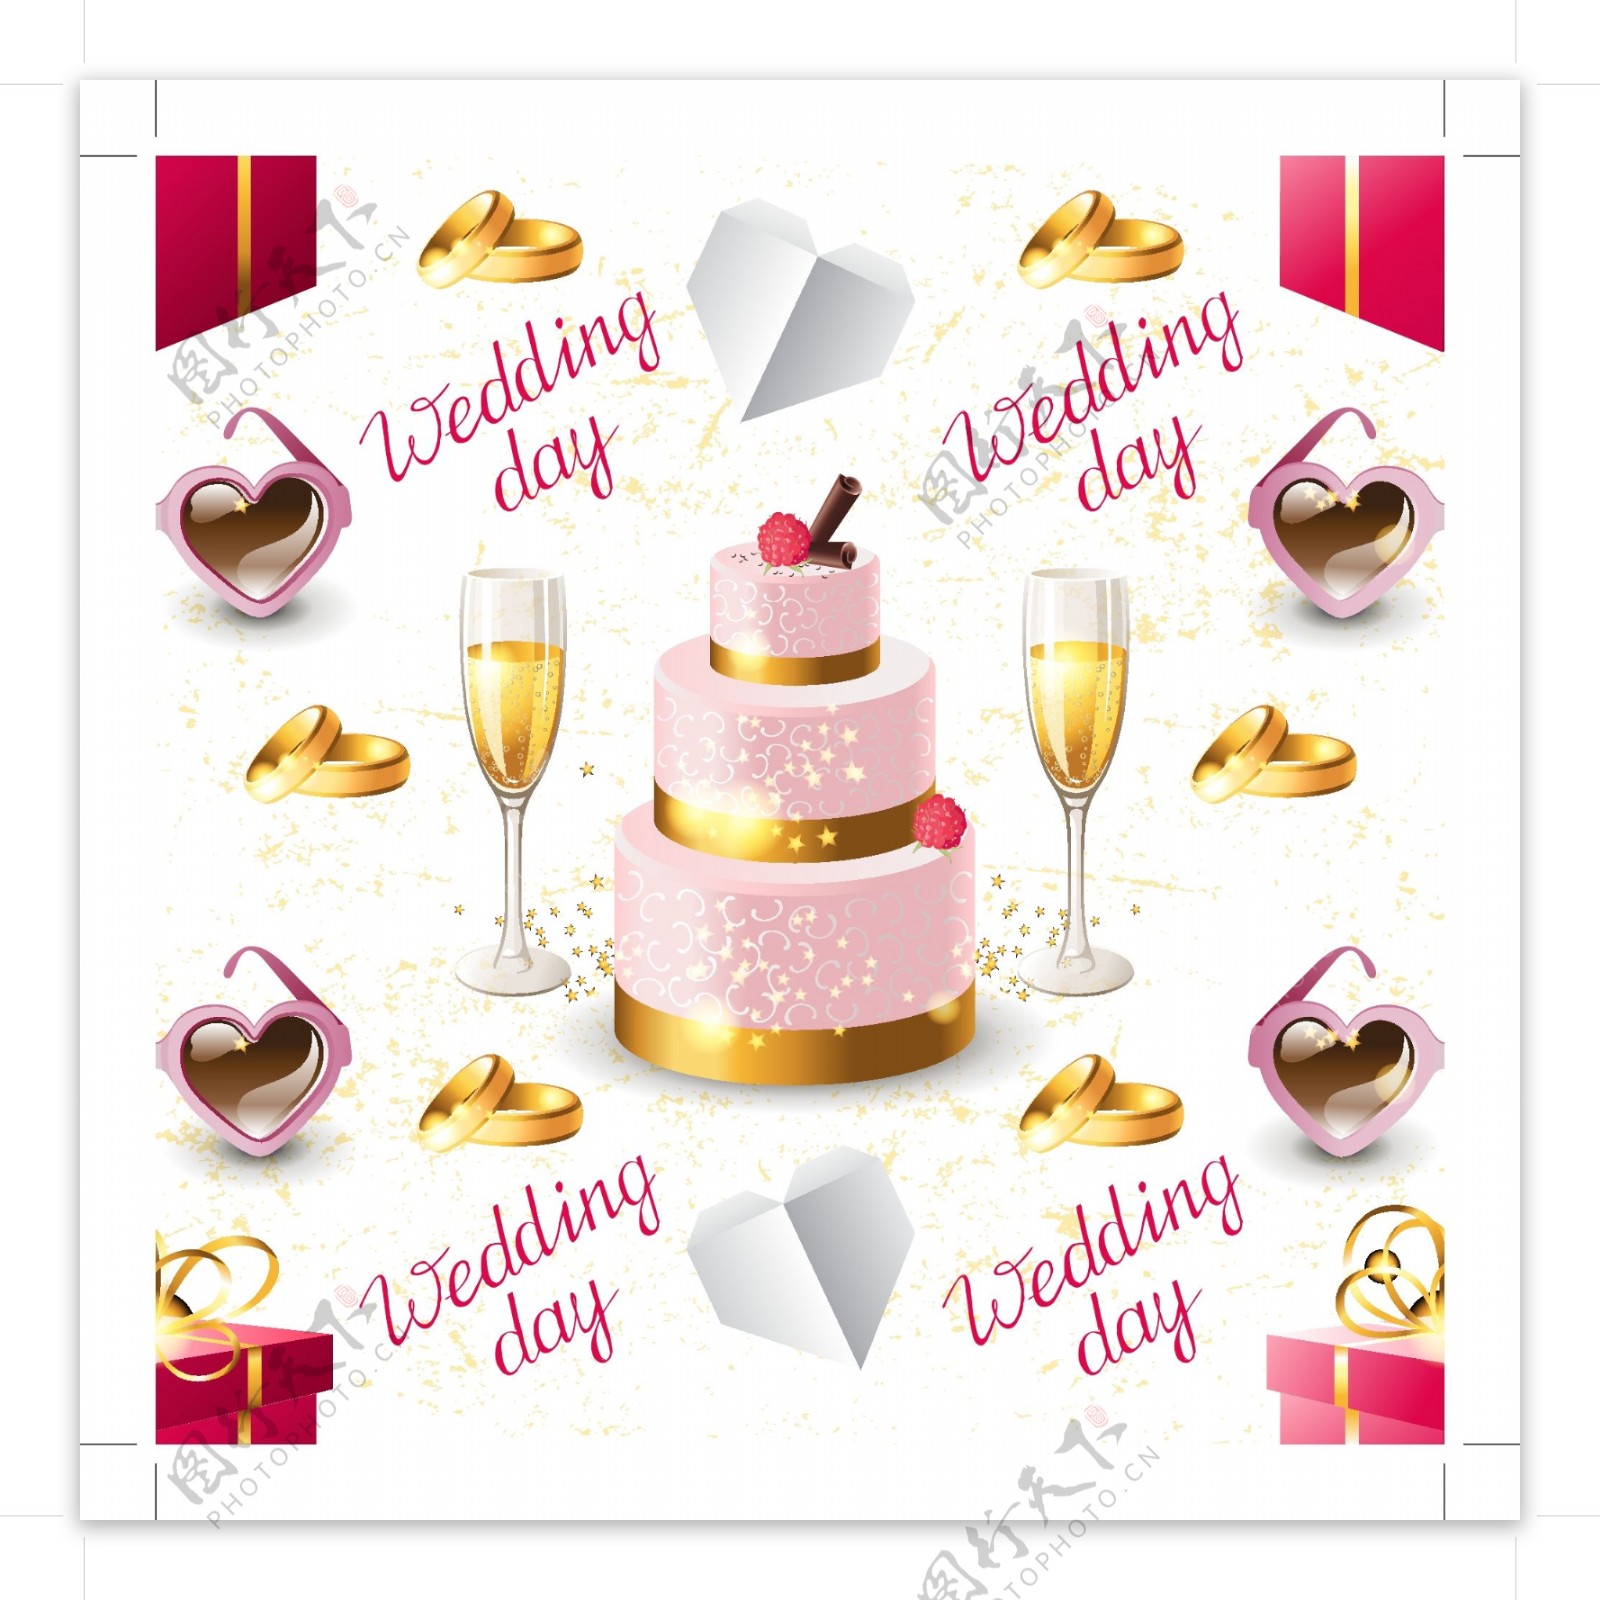 婚礼香槟与蛋糕无缝背景矢量素材